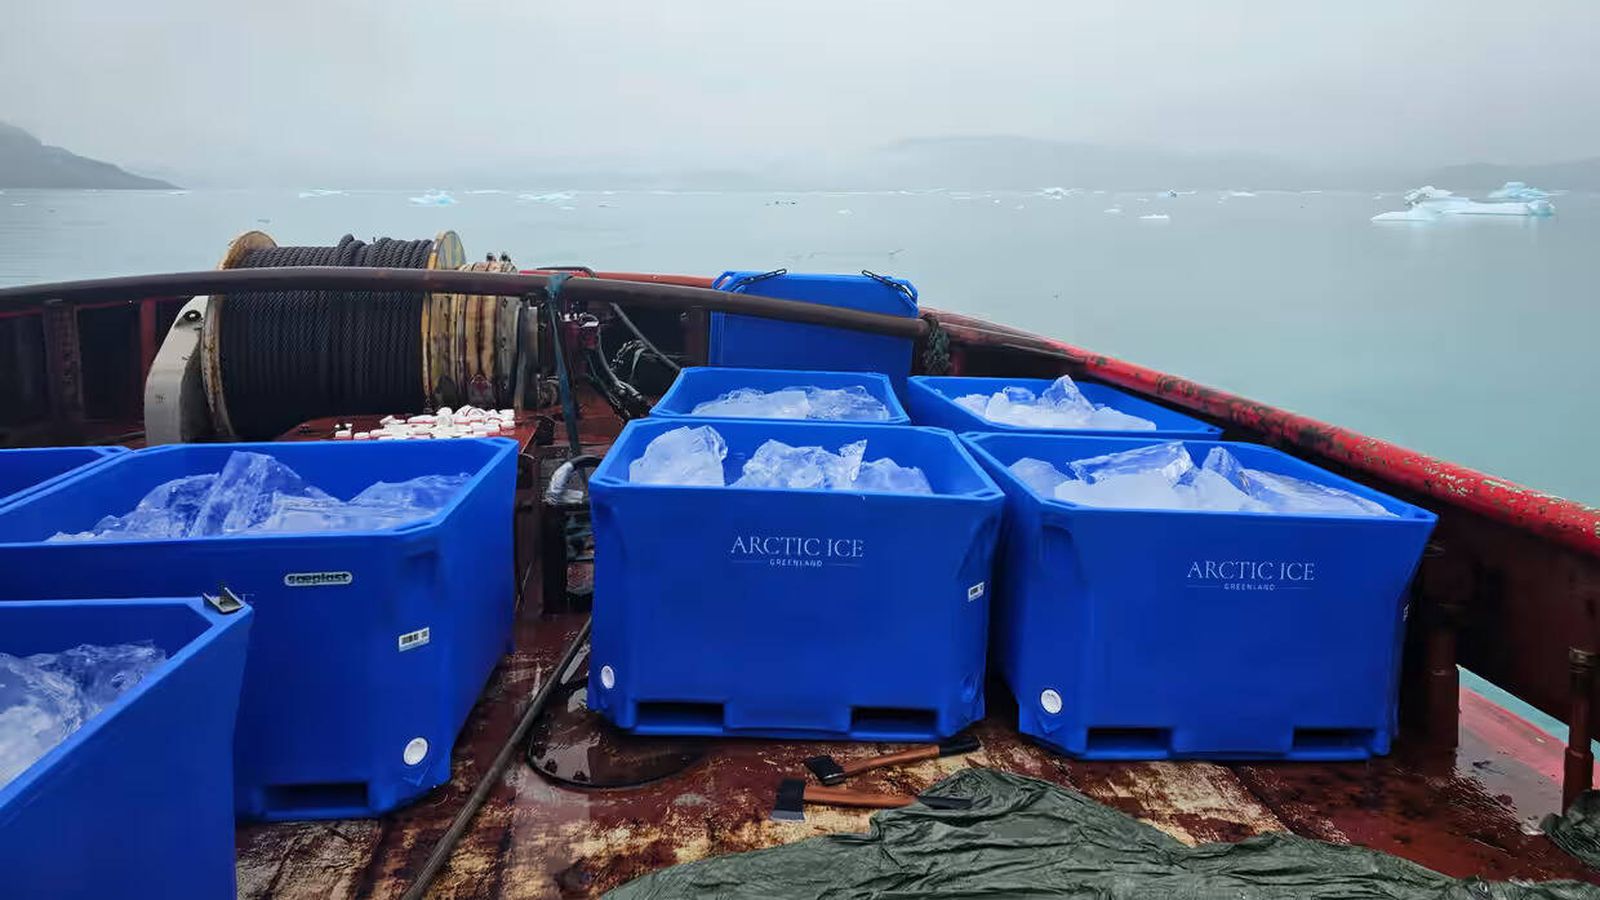 Cajas de hielo ártico transportadas desde Groenlandia. (Arctic Ice)